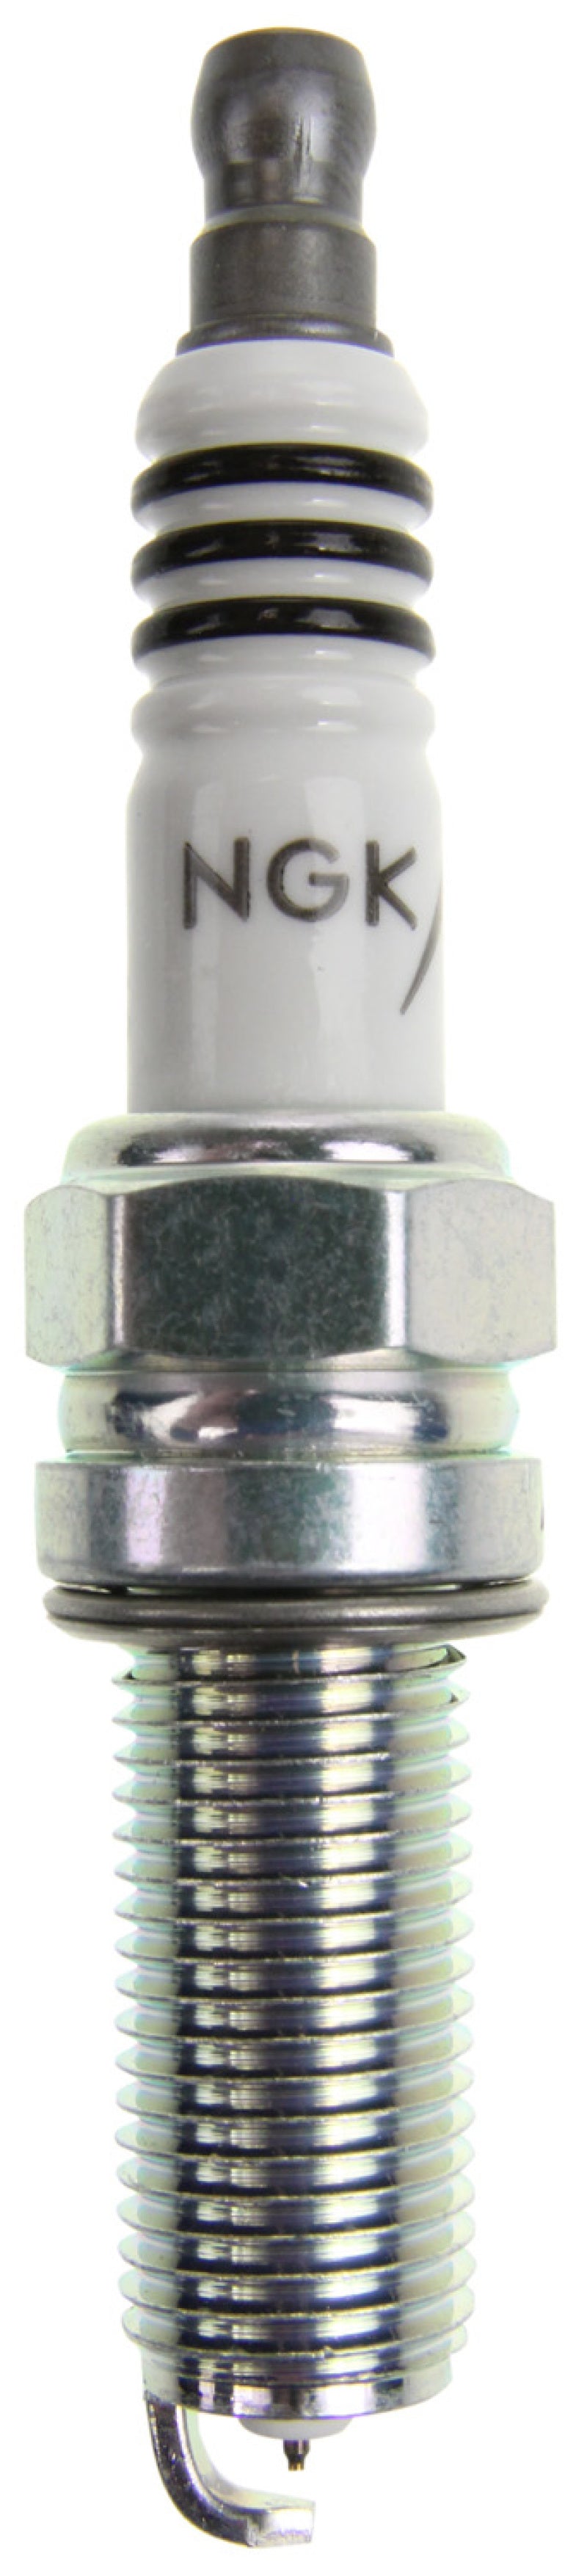 NGK Iridium IX Spark Plug Box of 4 (KR7DIX-11S)